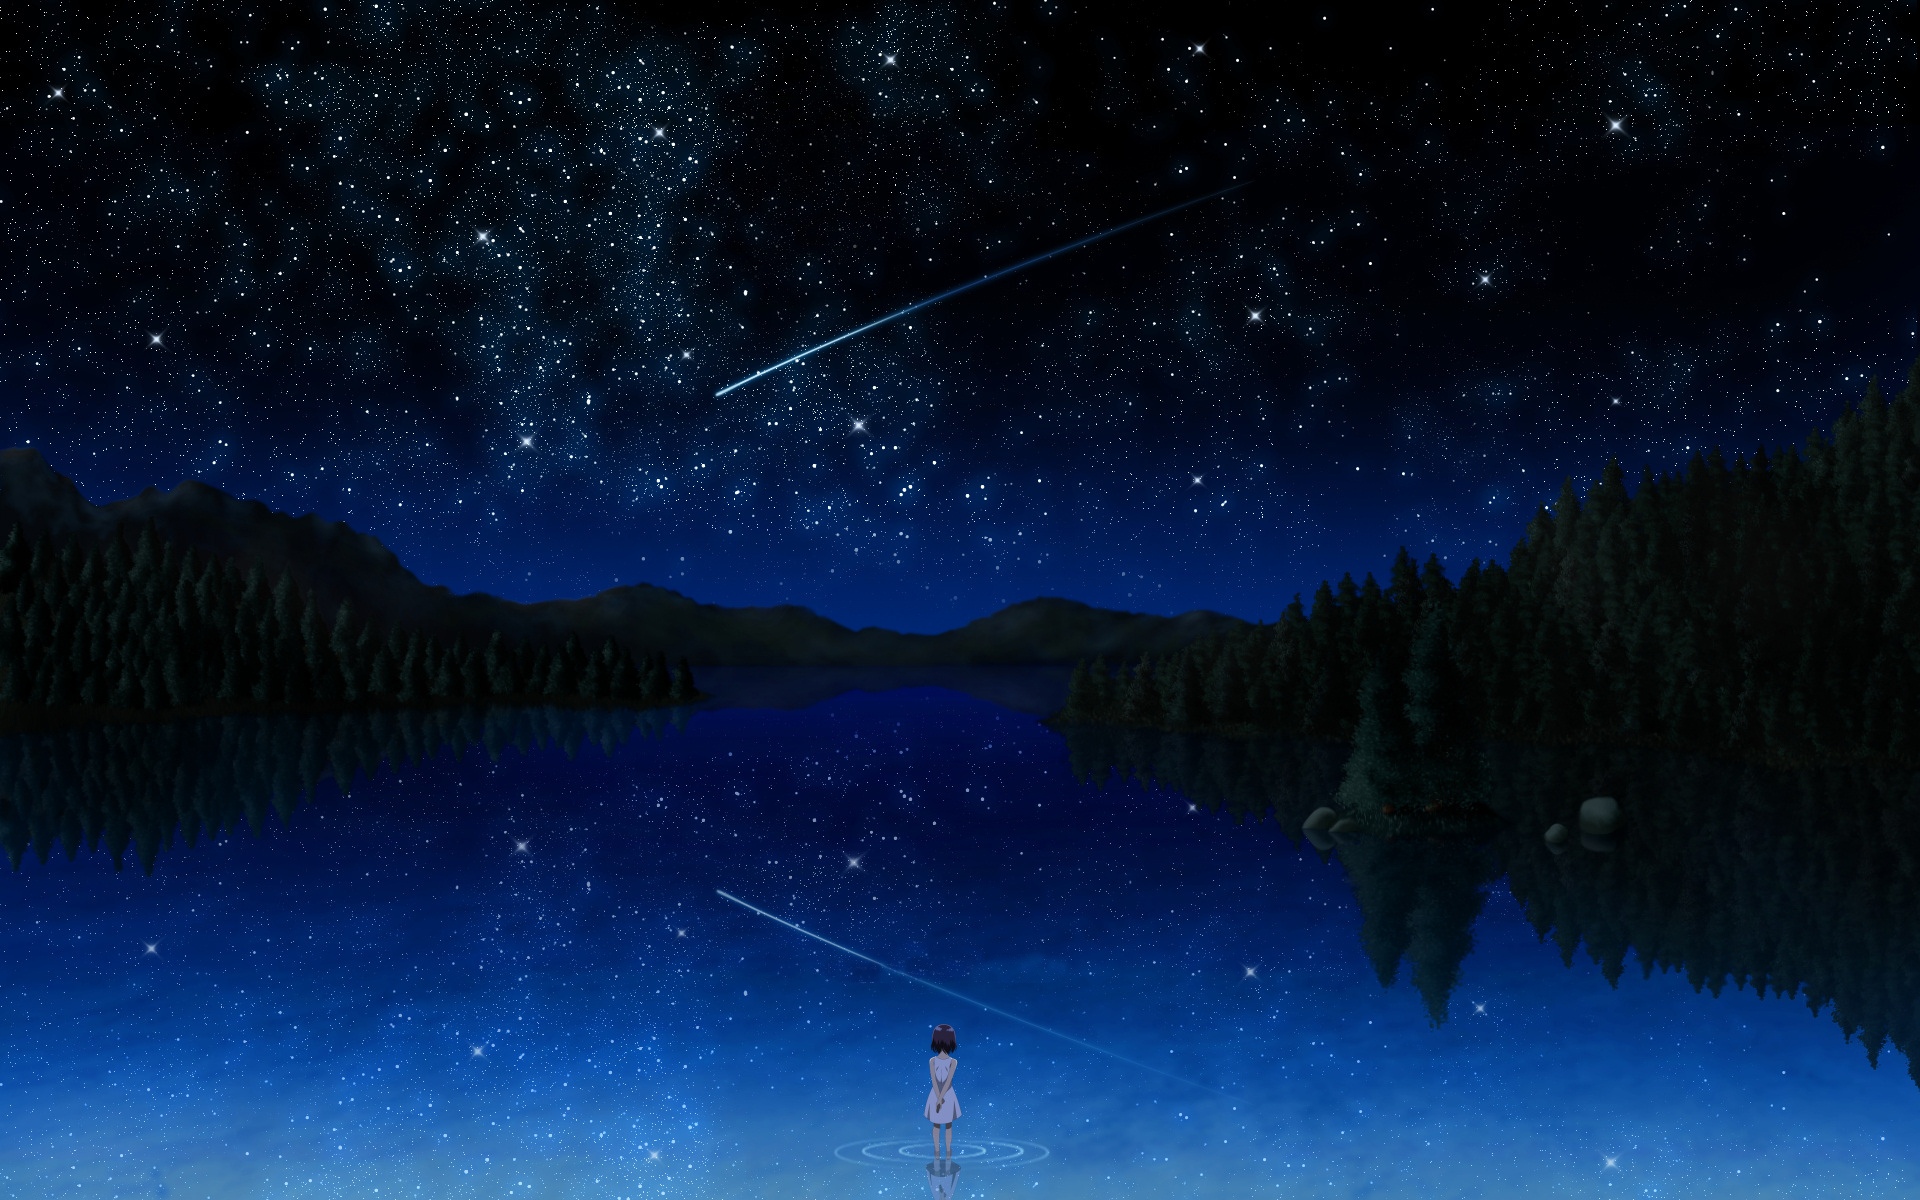 Anime, image, blue, shootingstar, meteor, girl, stars, wallpaper, lake